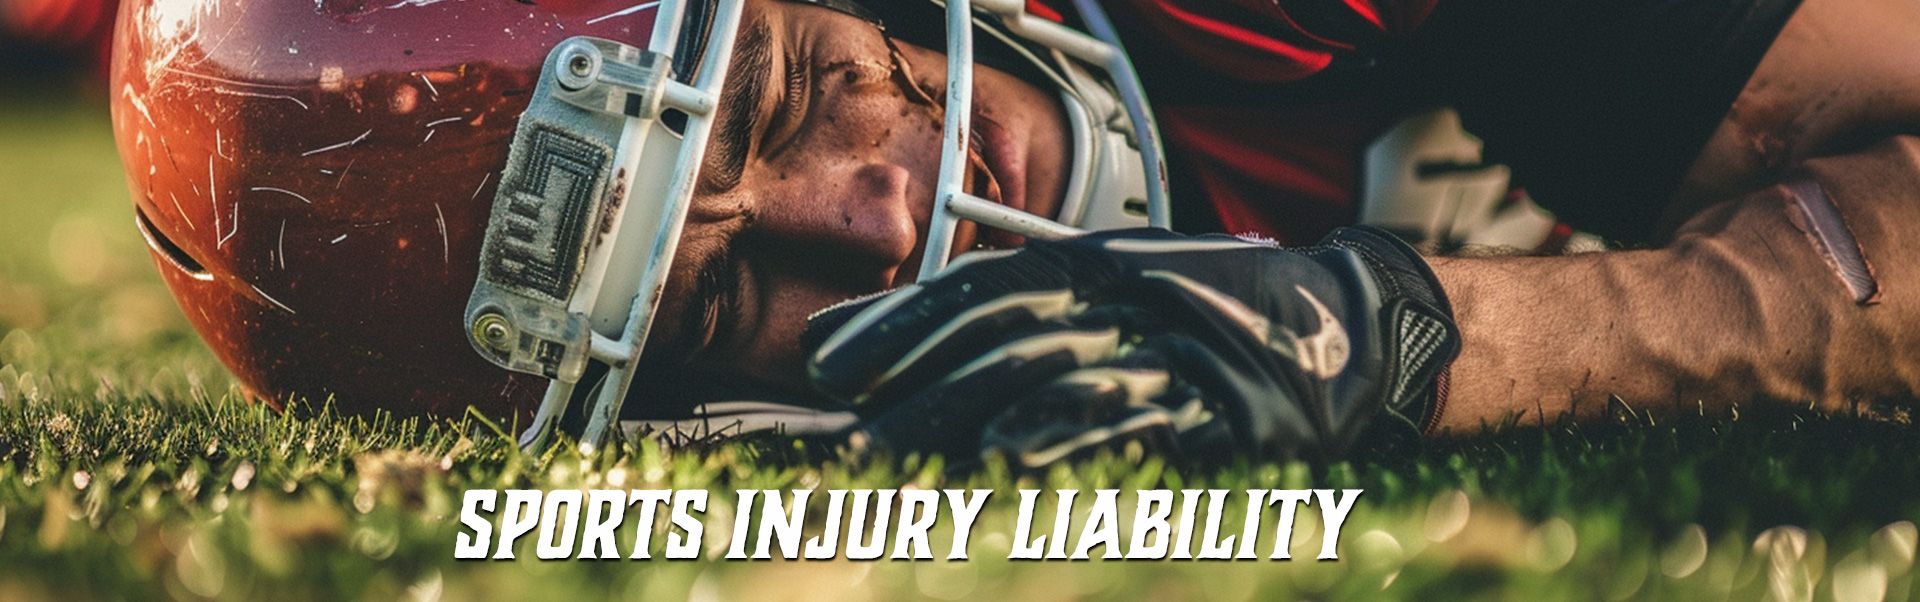 sports-injury-liability